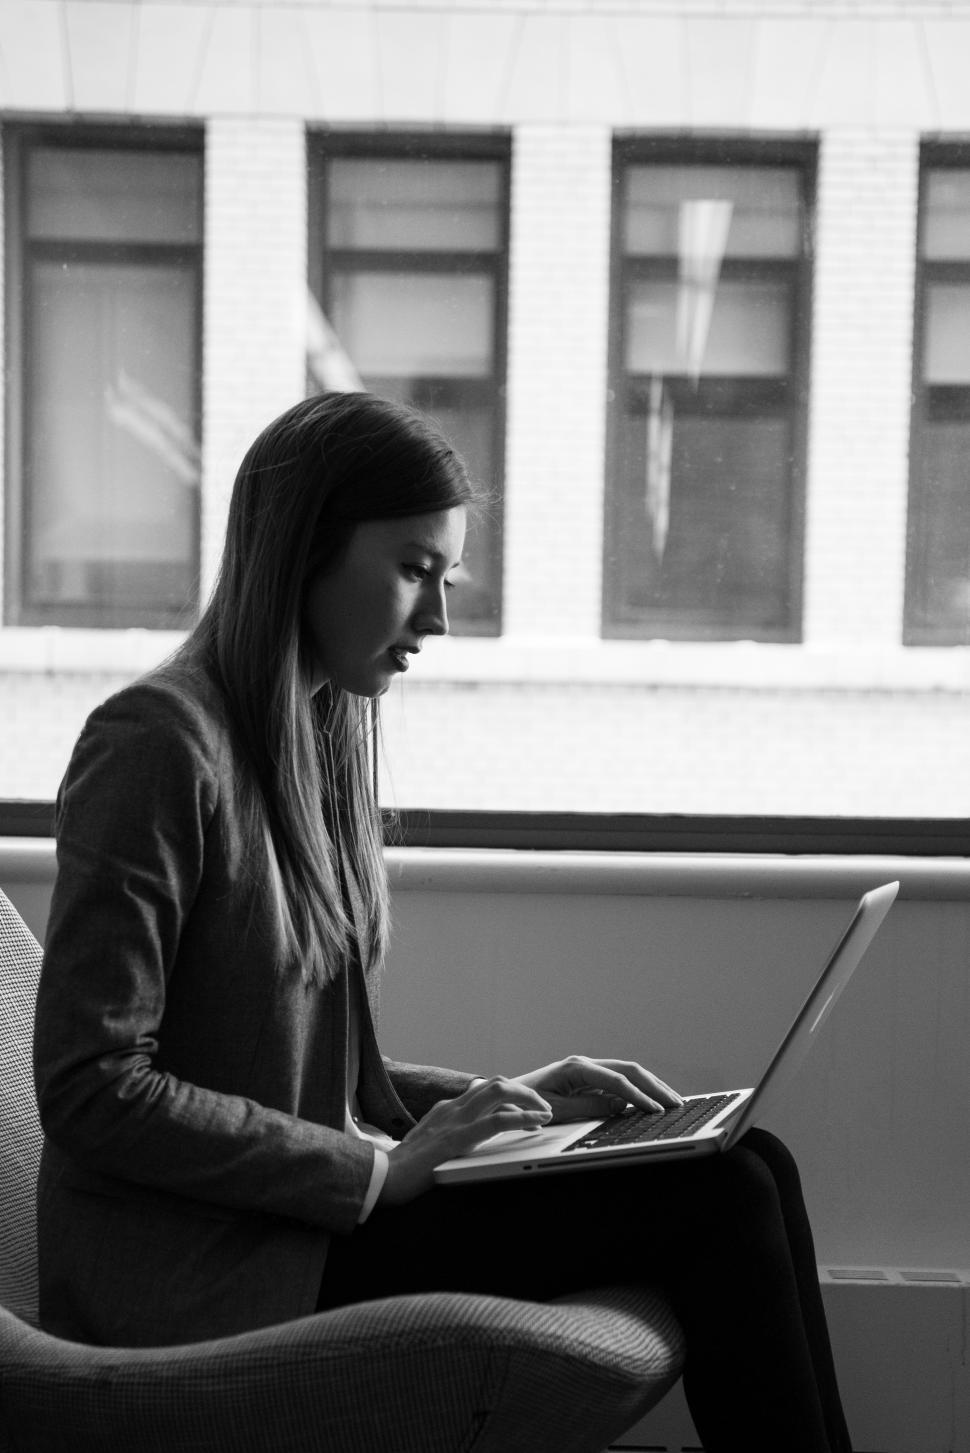 Free Image of Female using laptop near window in office - b&w 